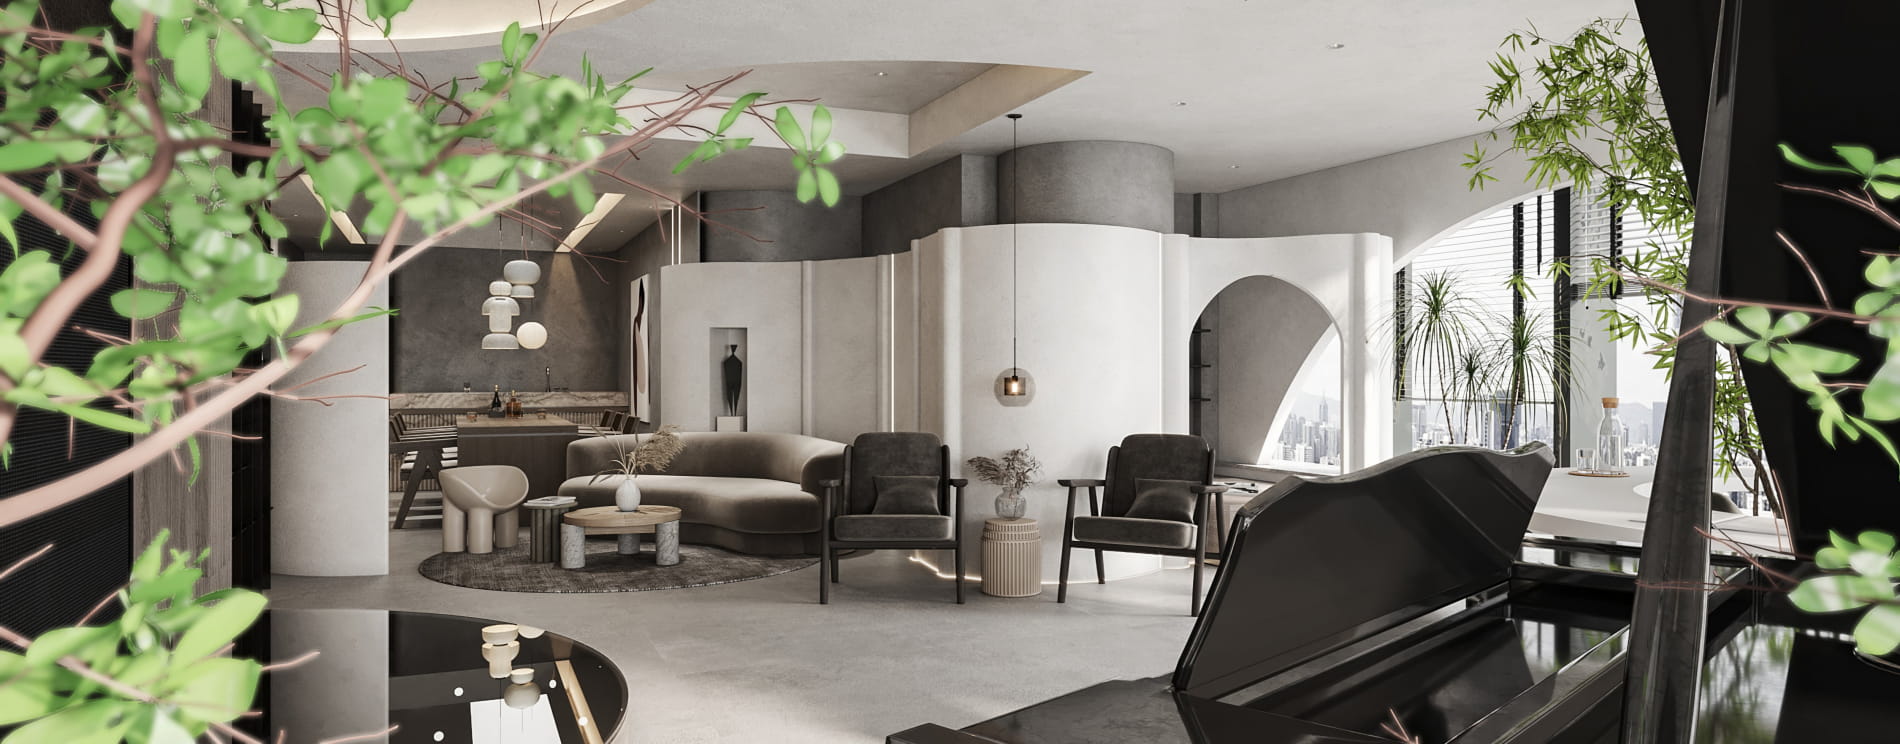 interior-design-visualization-for-apartment-design